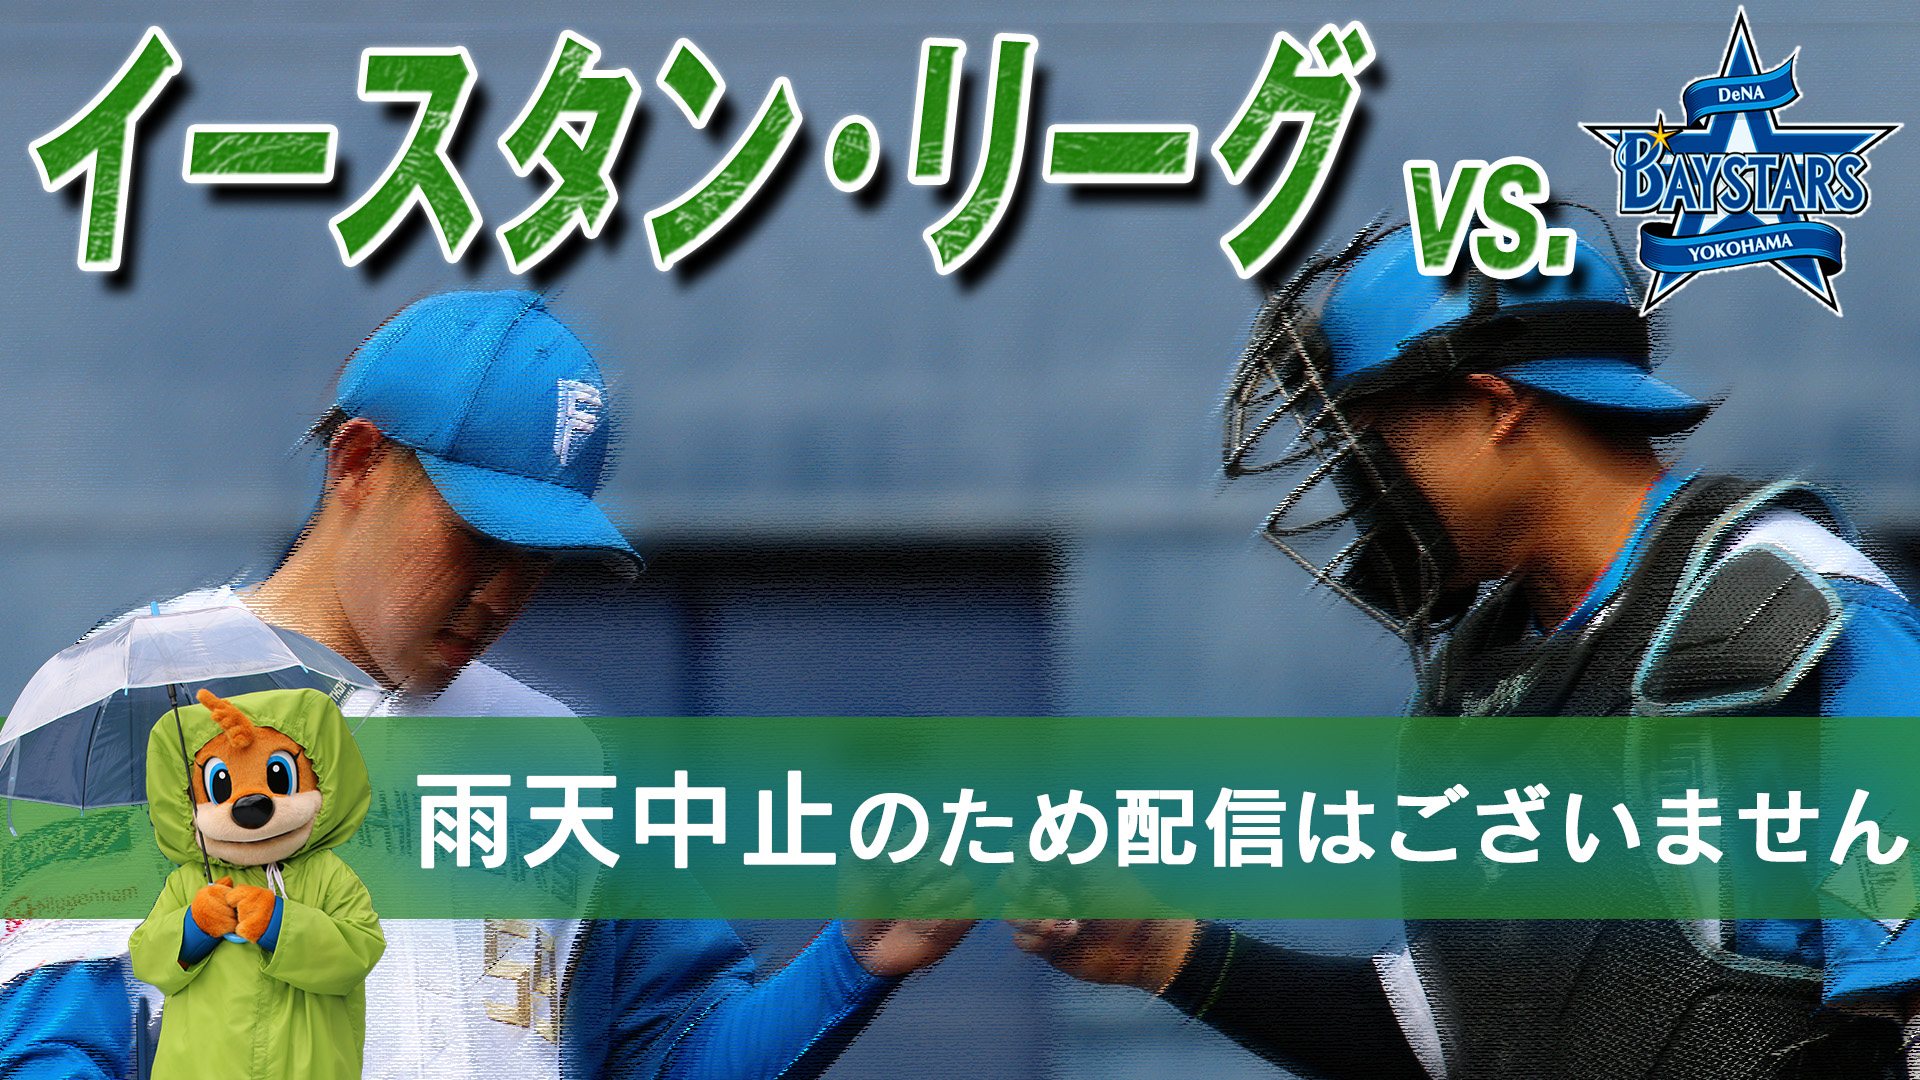 7月14日 (日) イースタン・リーグ vs 横浜DeNA 12:45～